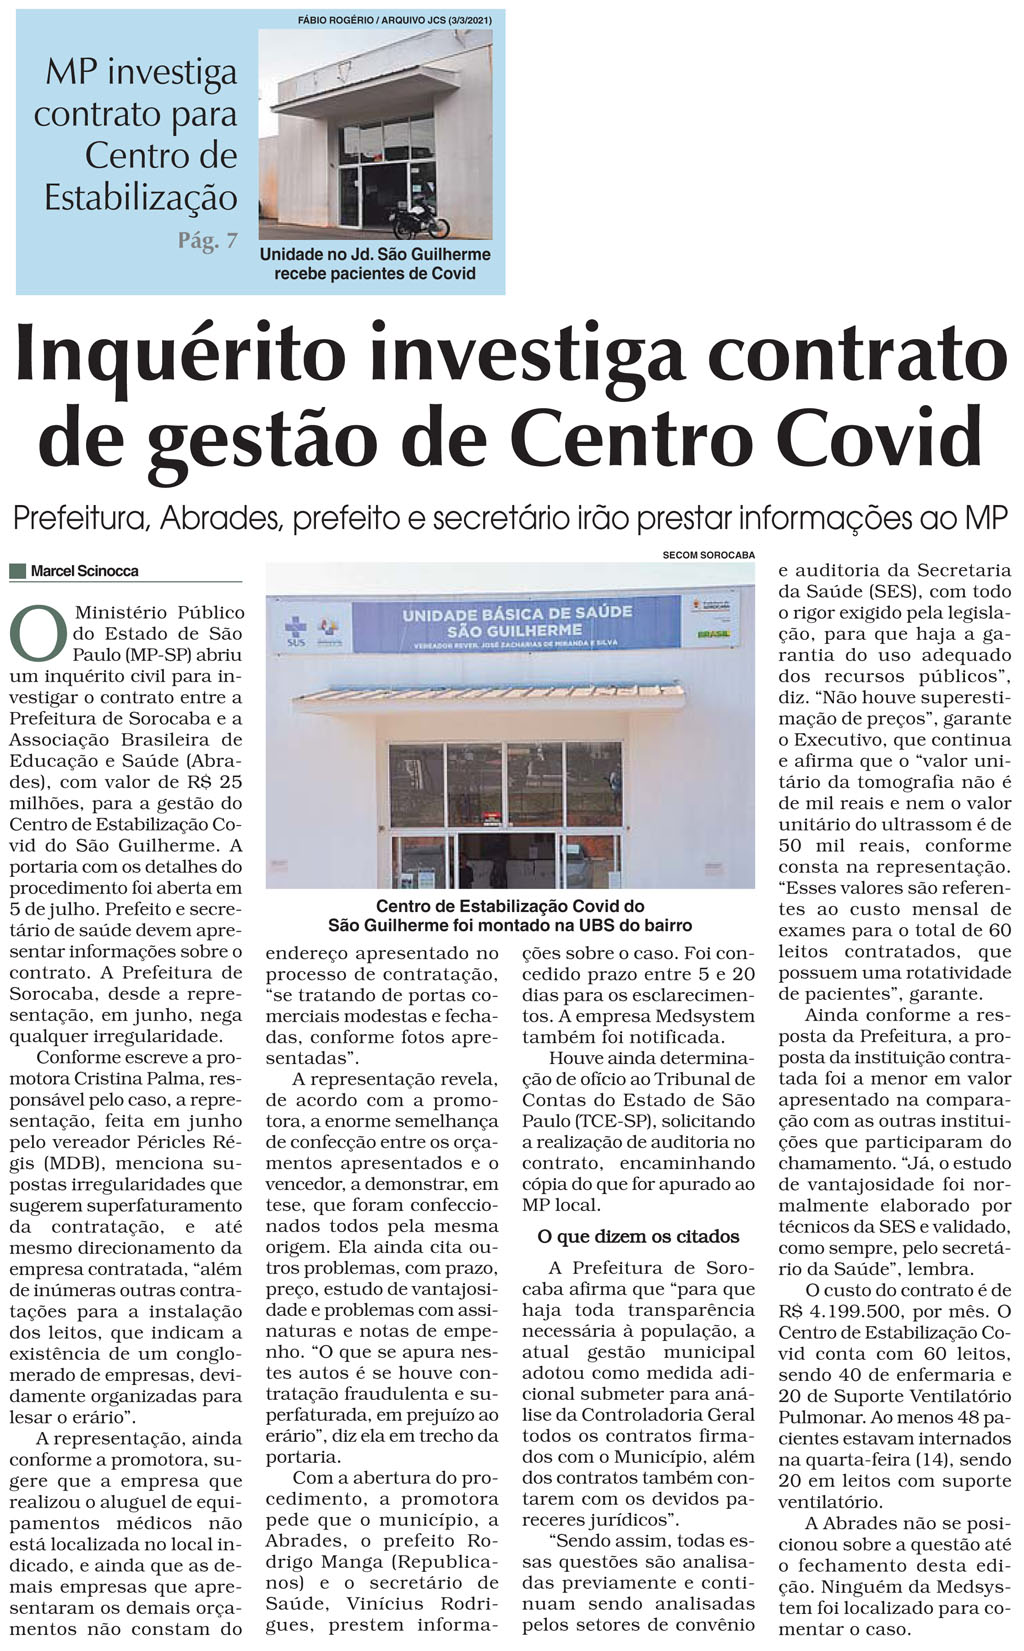 Ministério Público instaura inquérito civil para fiscalizar Hospital de Campanha do São Guilherme